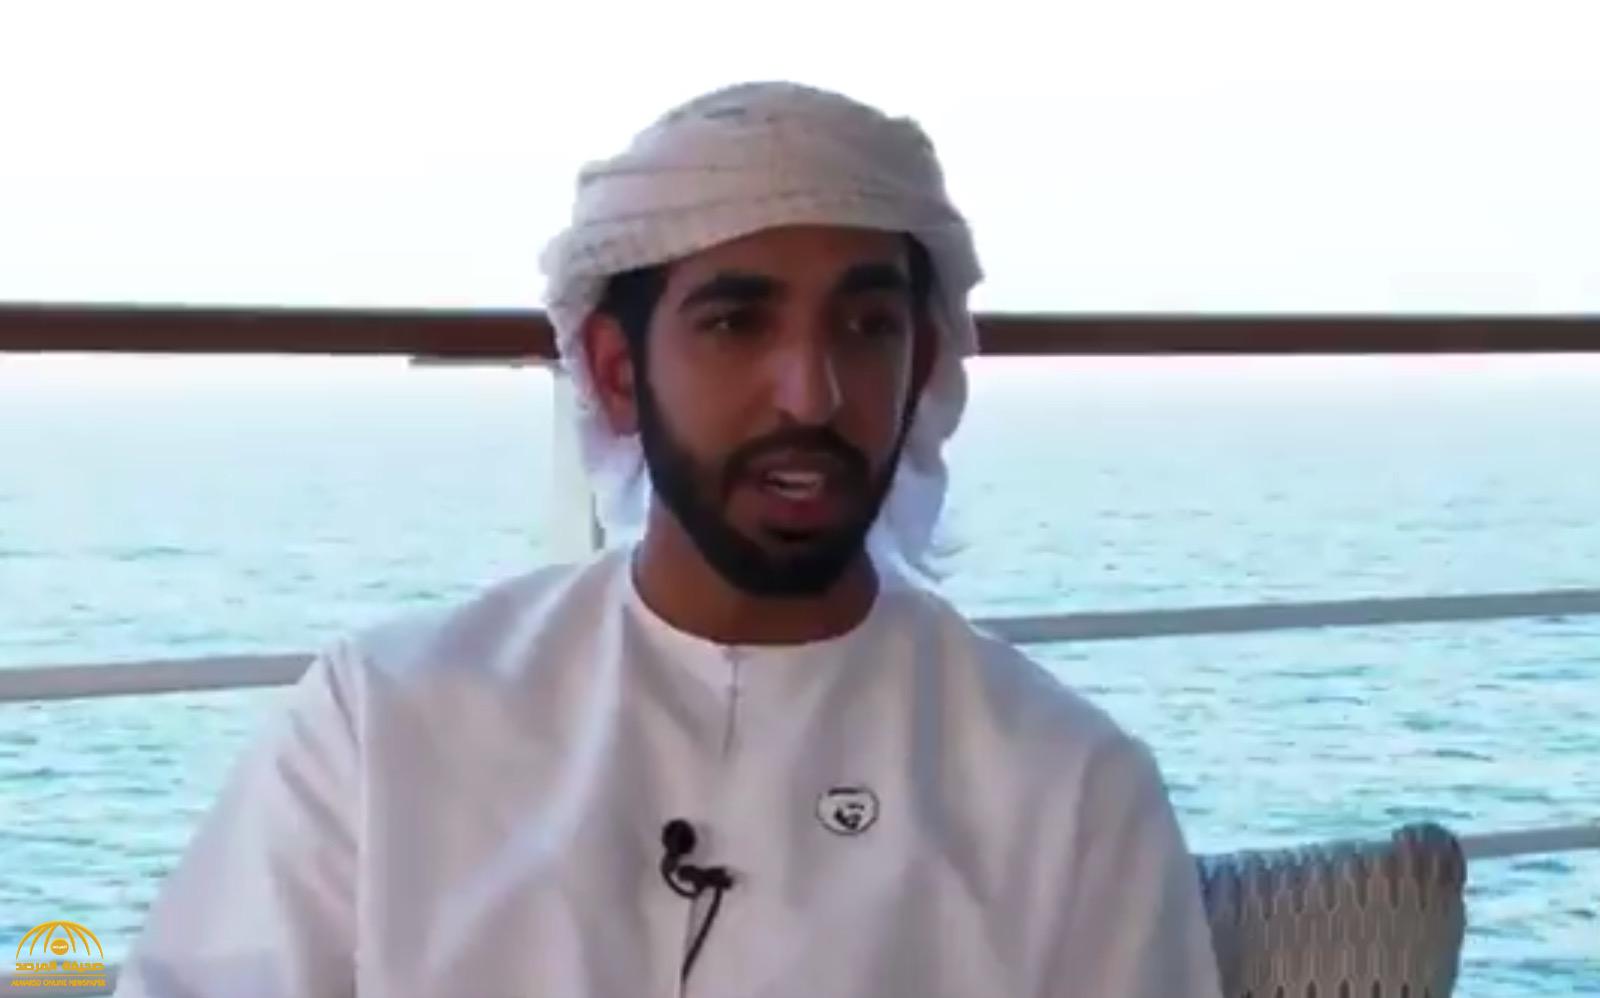 بعد زيارتها في رحلة "الكروز".. بالفيديو: ماذا قال السفير الإماراتي بالمملكة عن جزيرة "سندالا" في نيوم؟